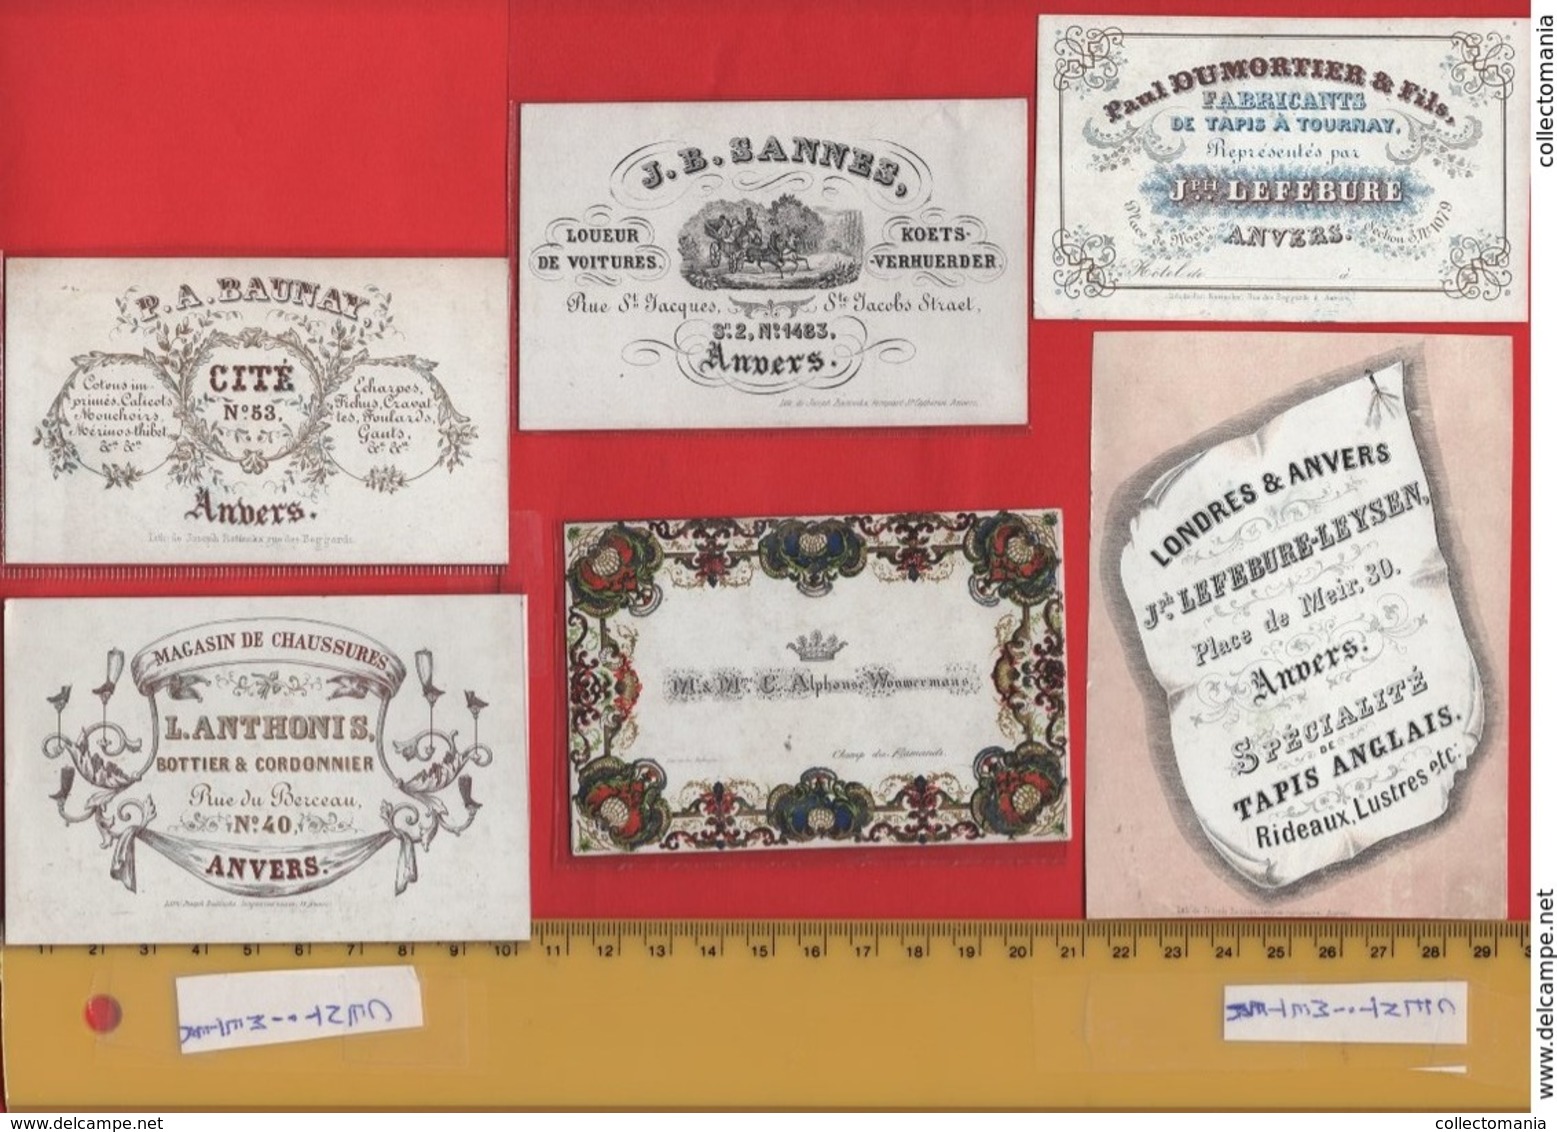 lot85D: 6 ViSiT cards, printer: all  RATiNCKX in ANVERS Antwerpen porselein kaarten circa 1840 à1860 hand press litho